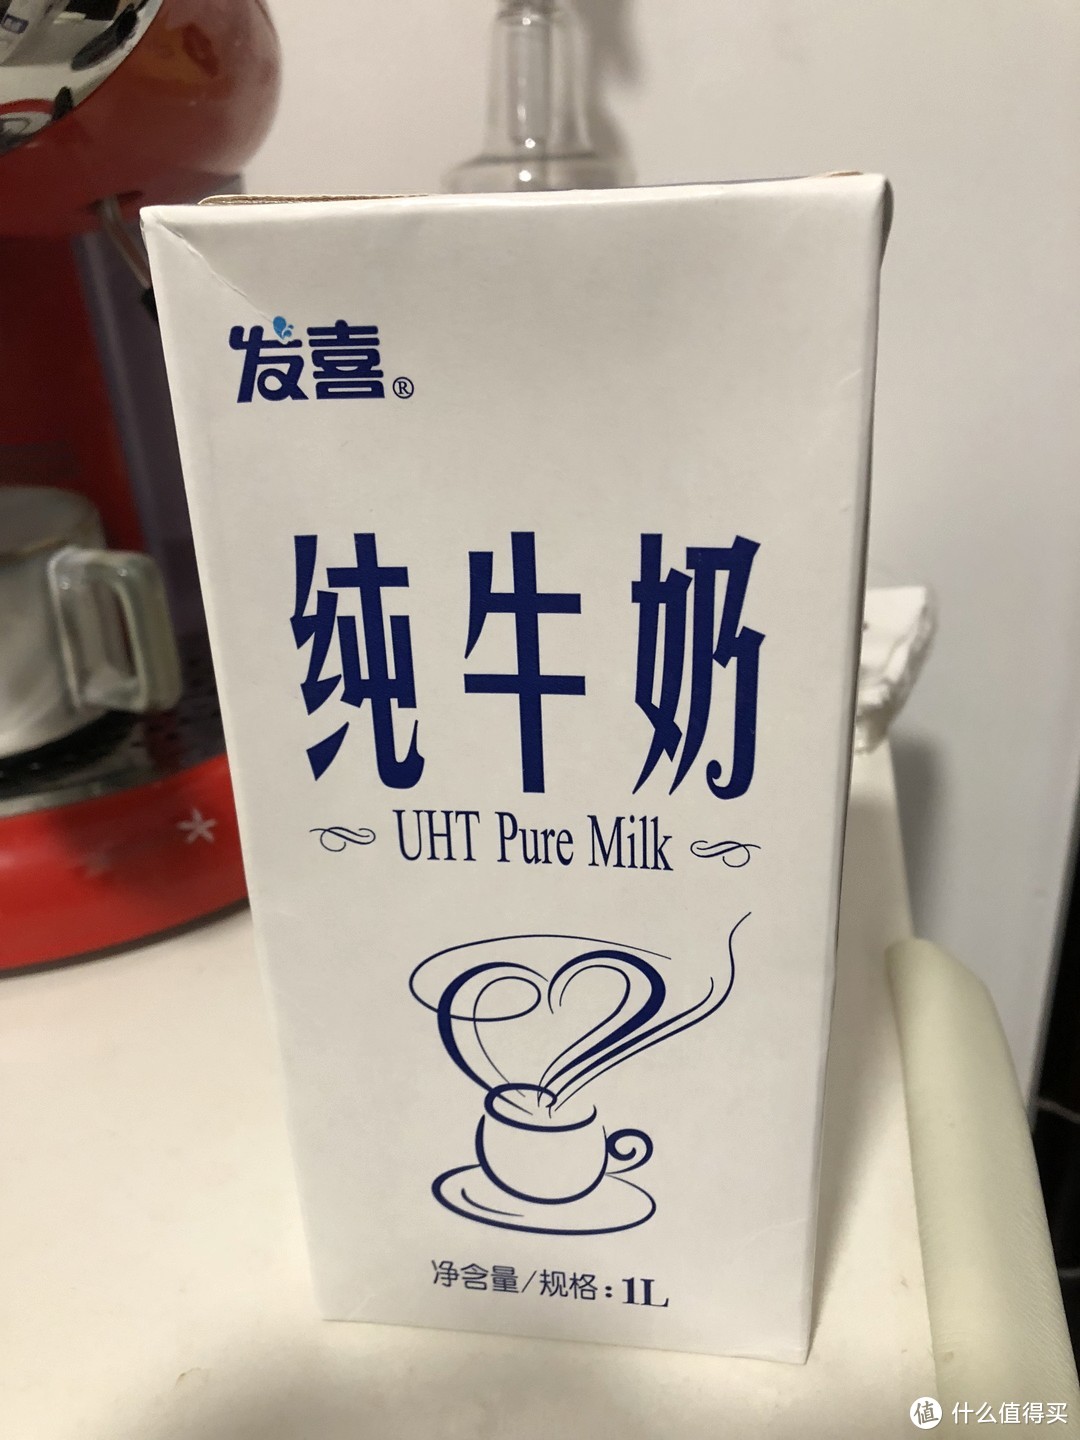 准备好牛奶，这个牛奶打奶泡效果较好，星巴克用的这个